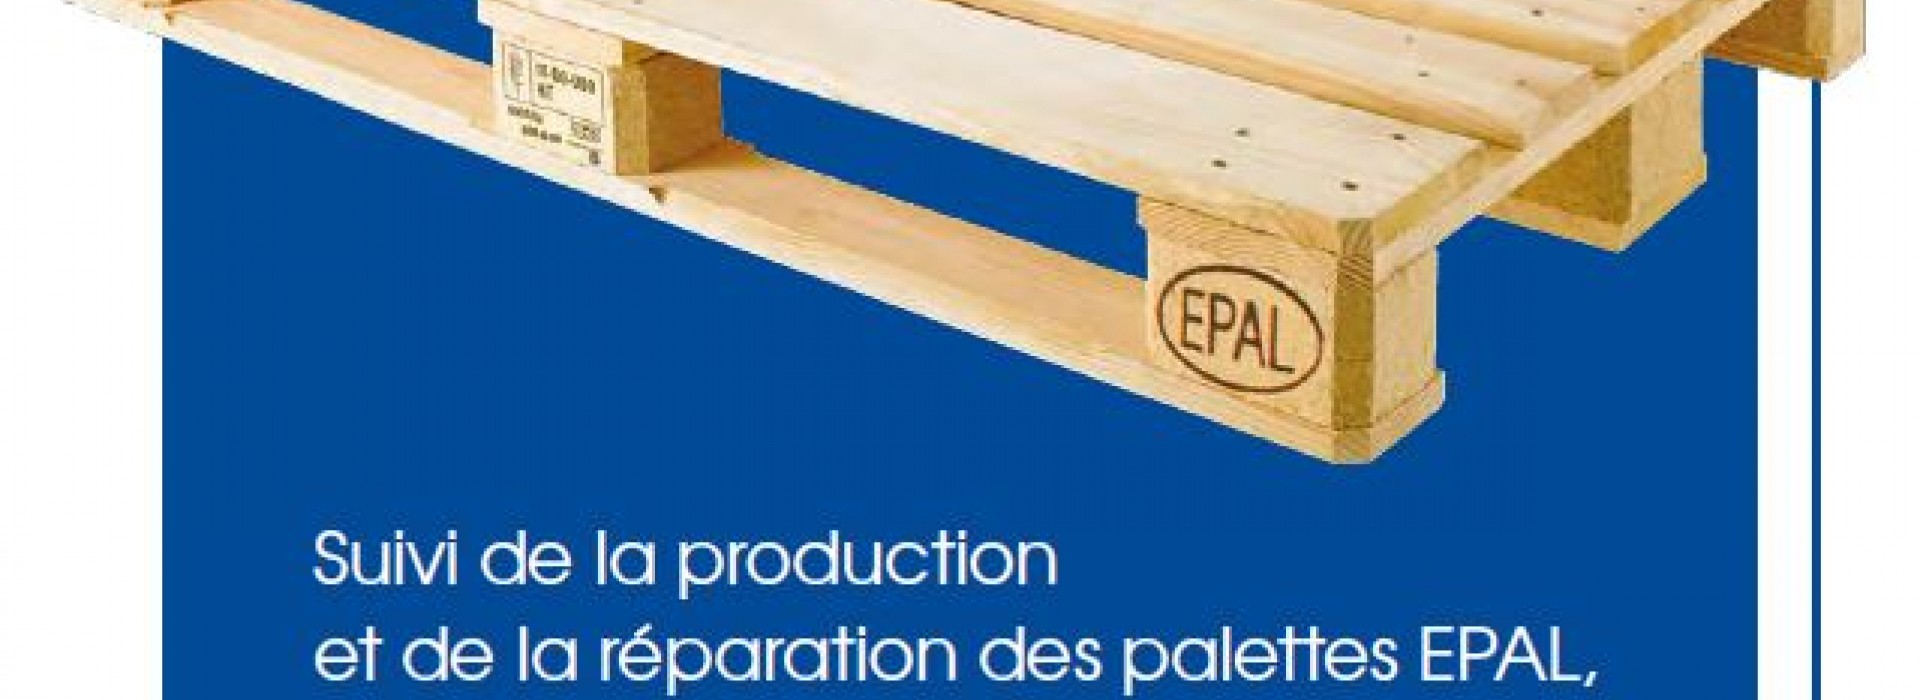 Découvrez le livret Statistiques EPAL France